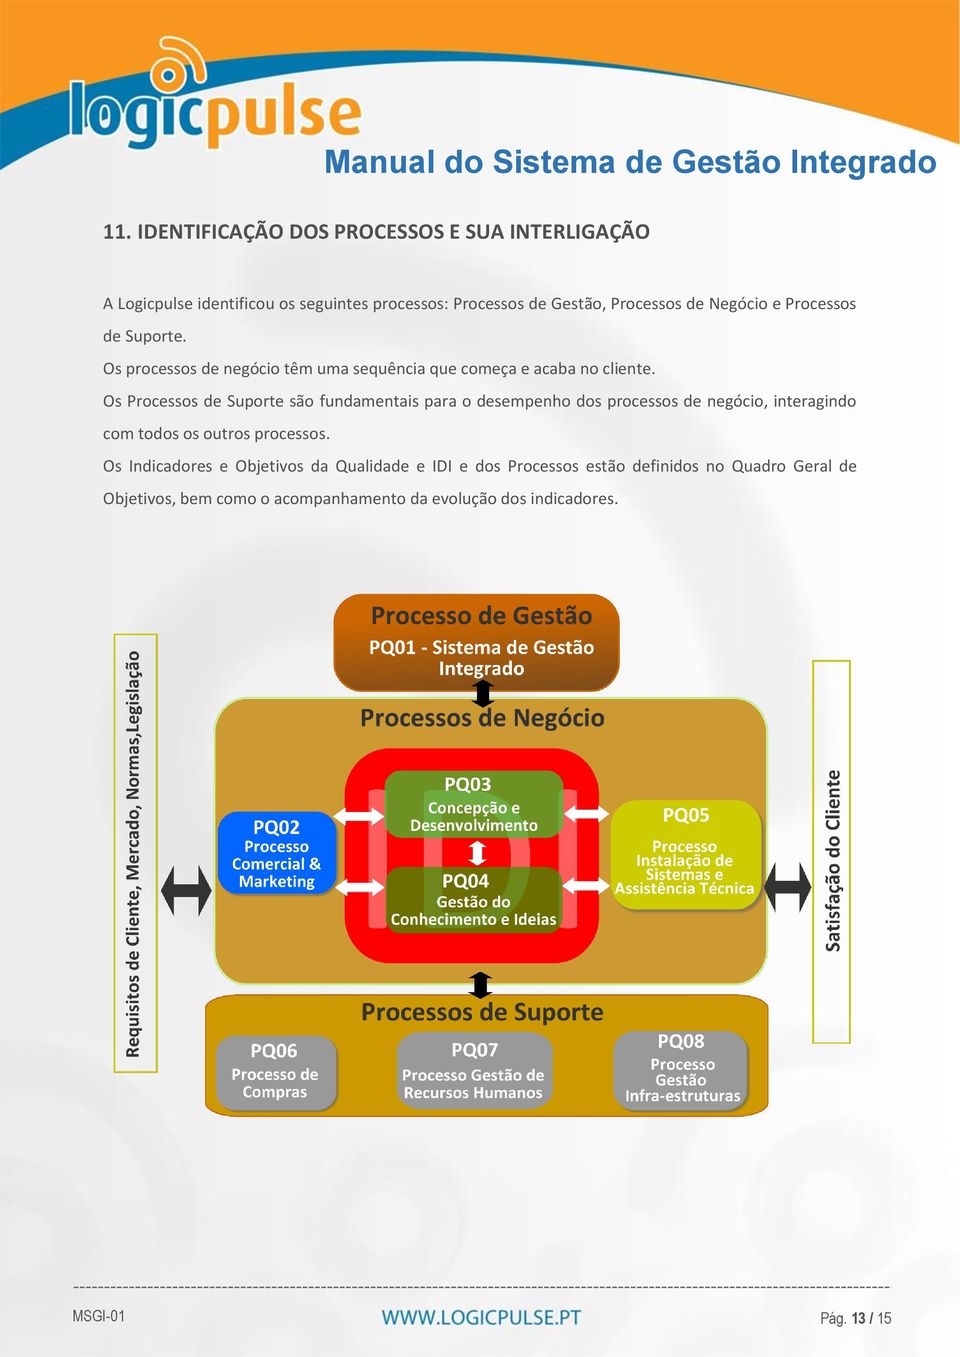 Os Processos de Suporte são fundamentais para o desempenho dos processos de negócio, interagindo com todos os outros processos.